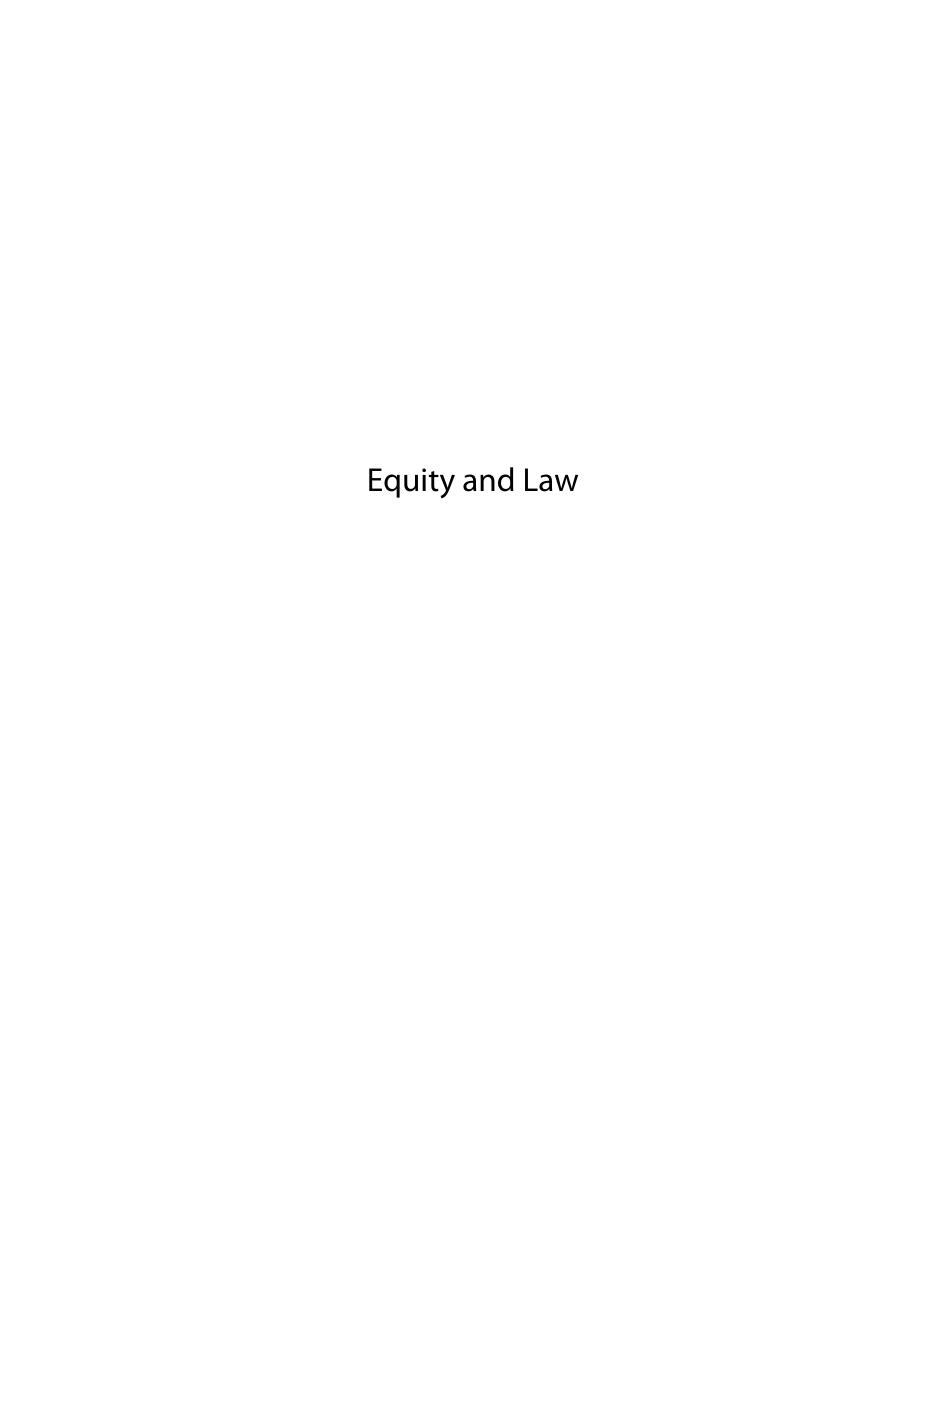 Equity and Law by María José Falcón y Tella